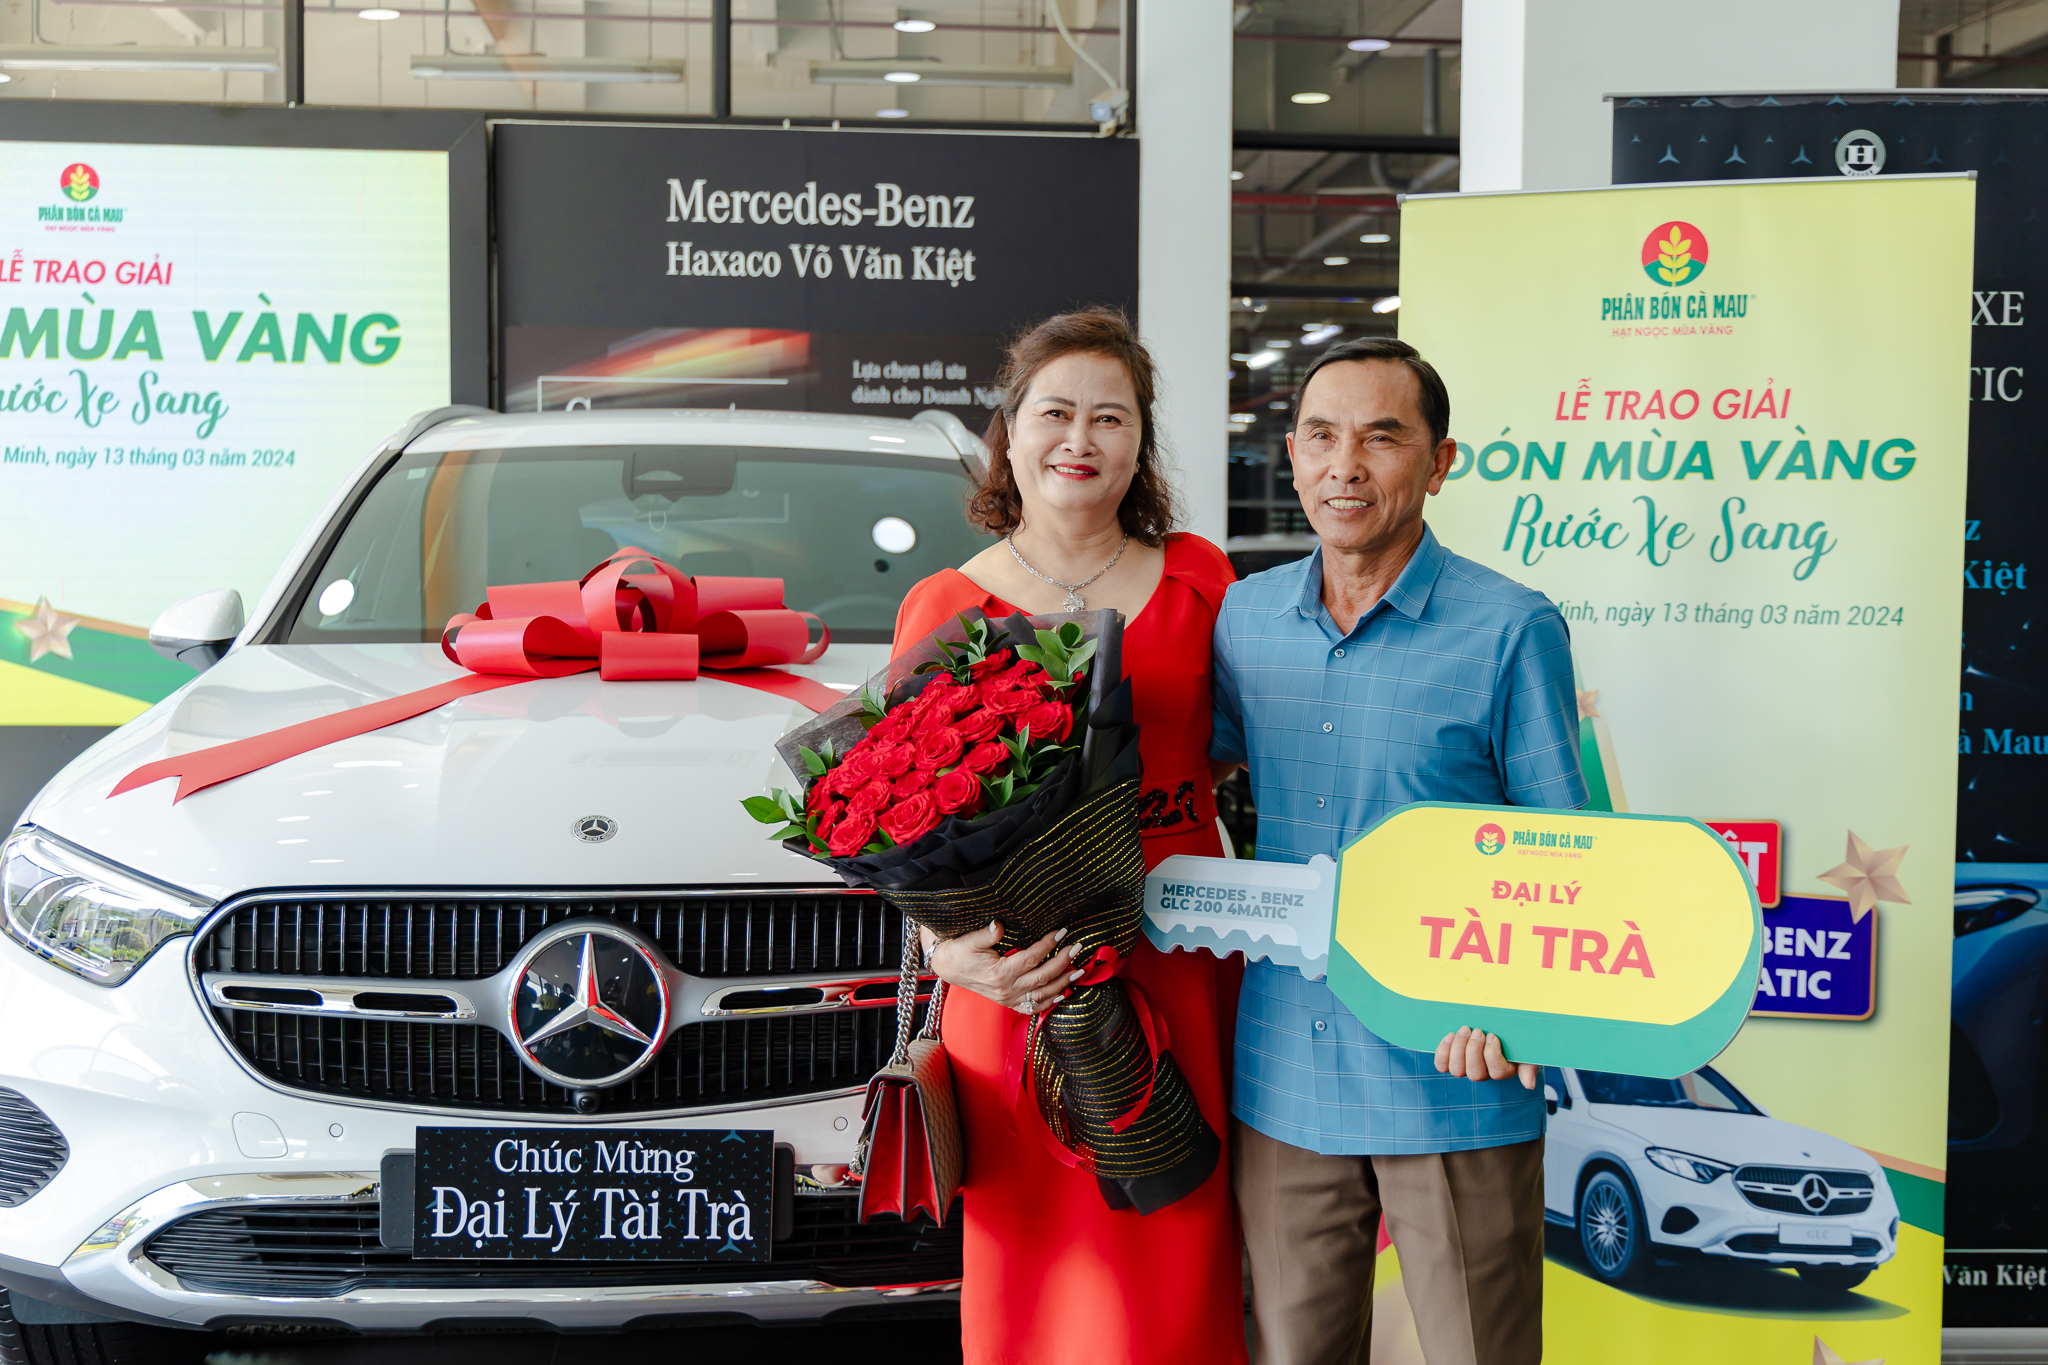 “Đón mùa vàng – Rước xe sang”: Phân Bón Cà Mau trao giải thưởng đặc biệt cho khách hàng ở Đắk Lắk- Ảnh 2.